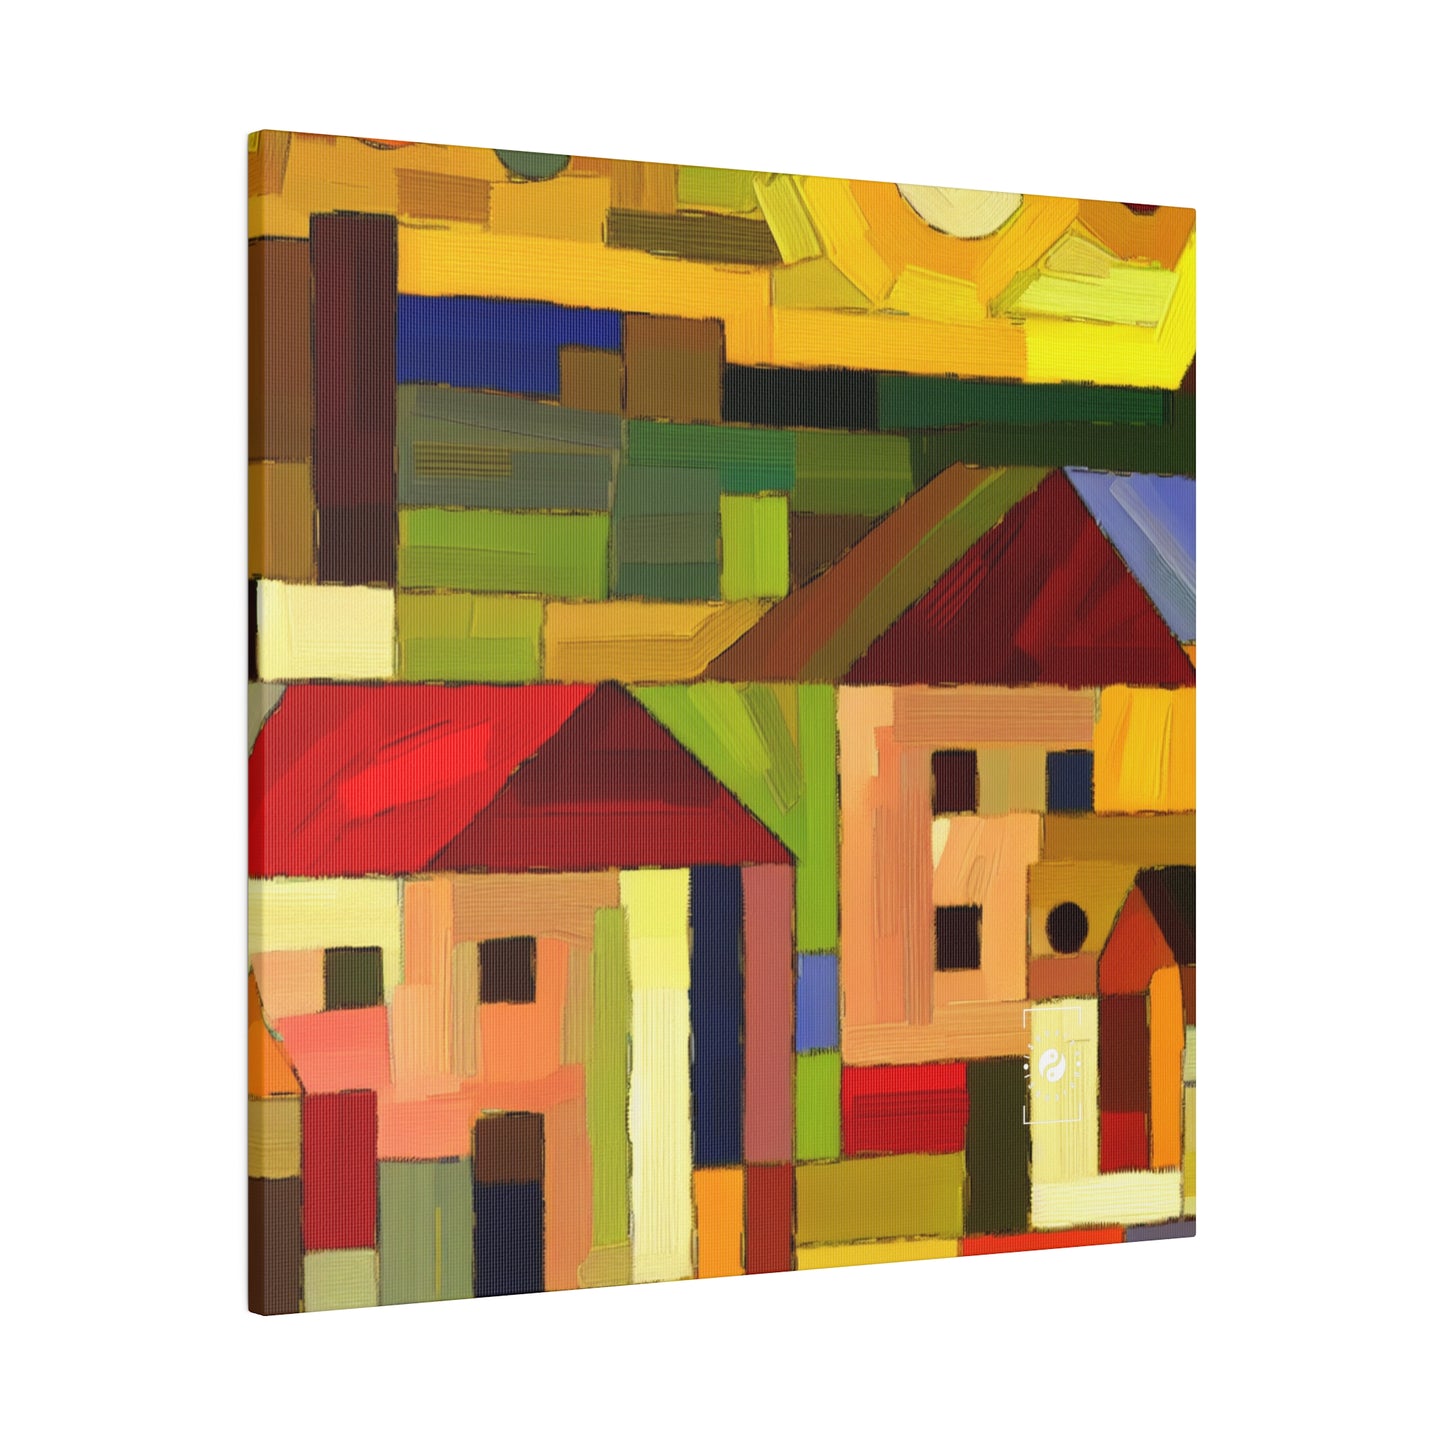 « Adobes de terre dans les teintes de Hundertwasser » – Impression sur toile